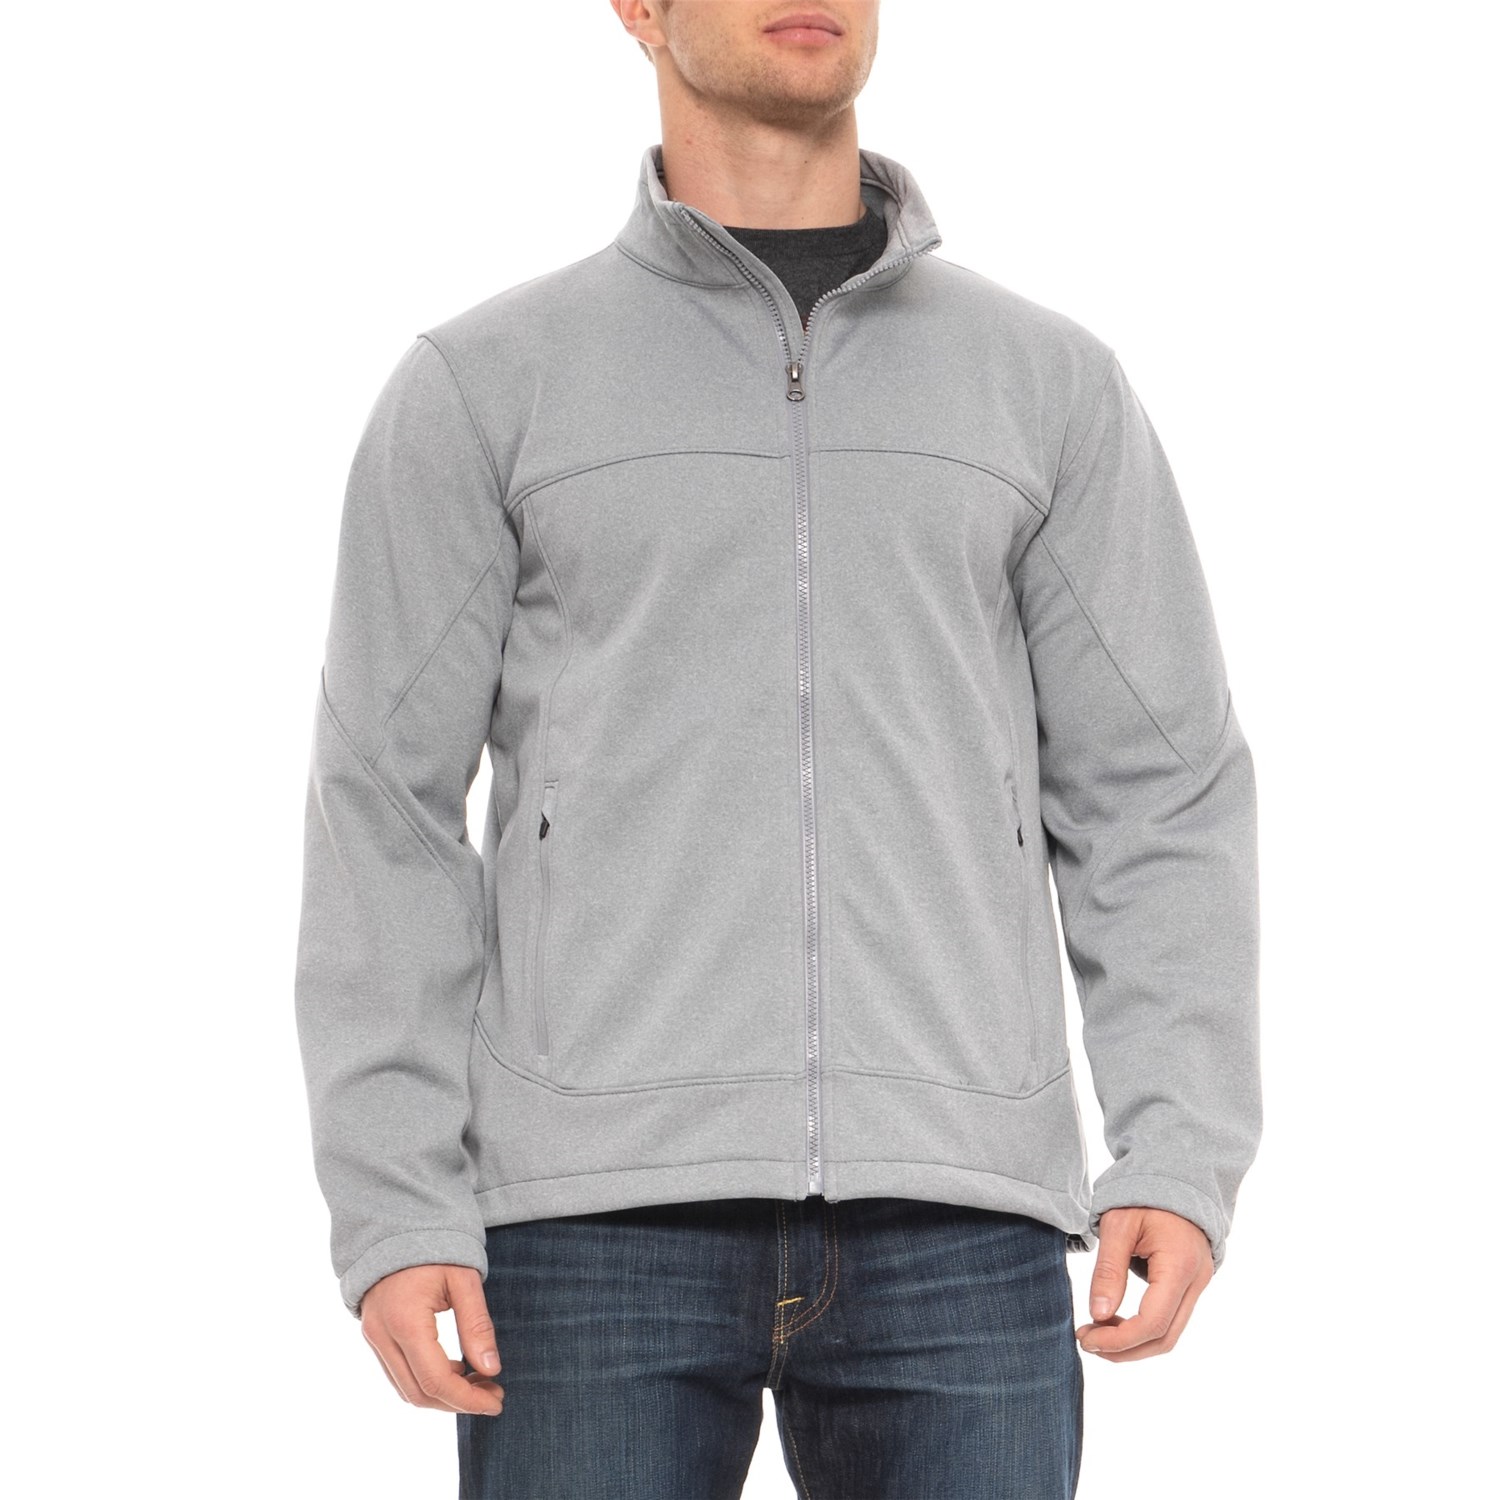 Urban Frontier Bonded Fleece Jacket – Full Zip (For Men)